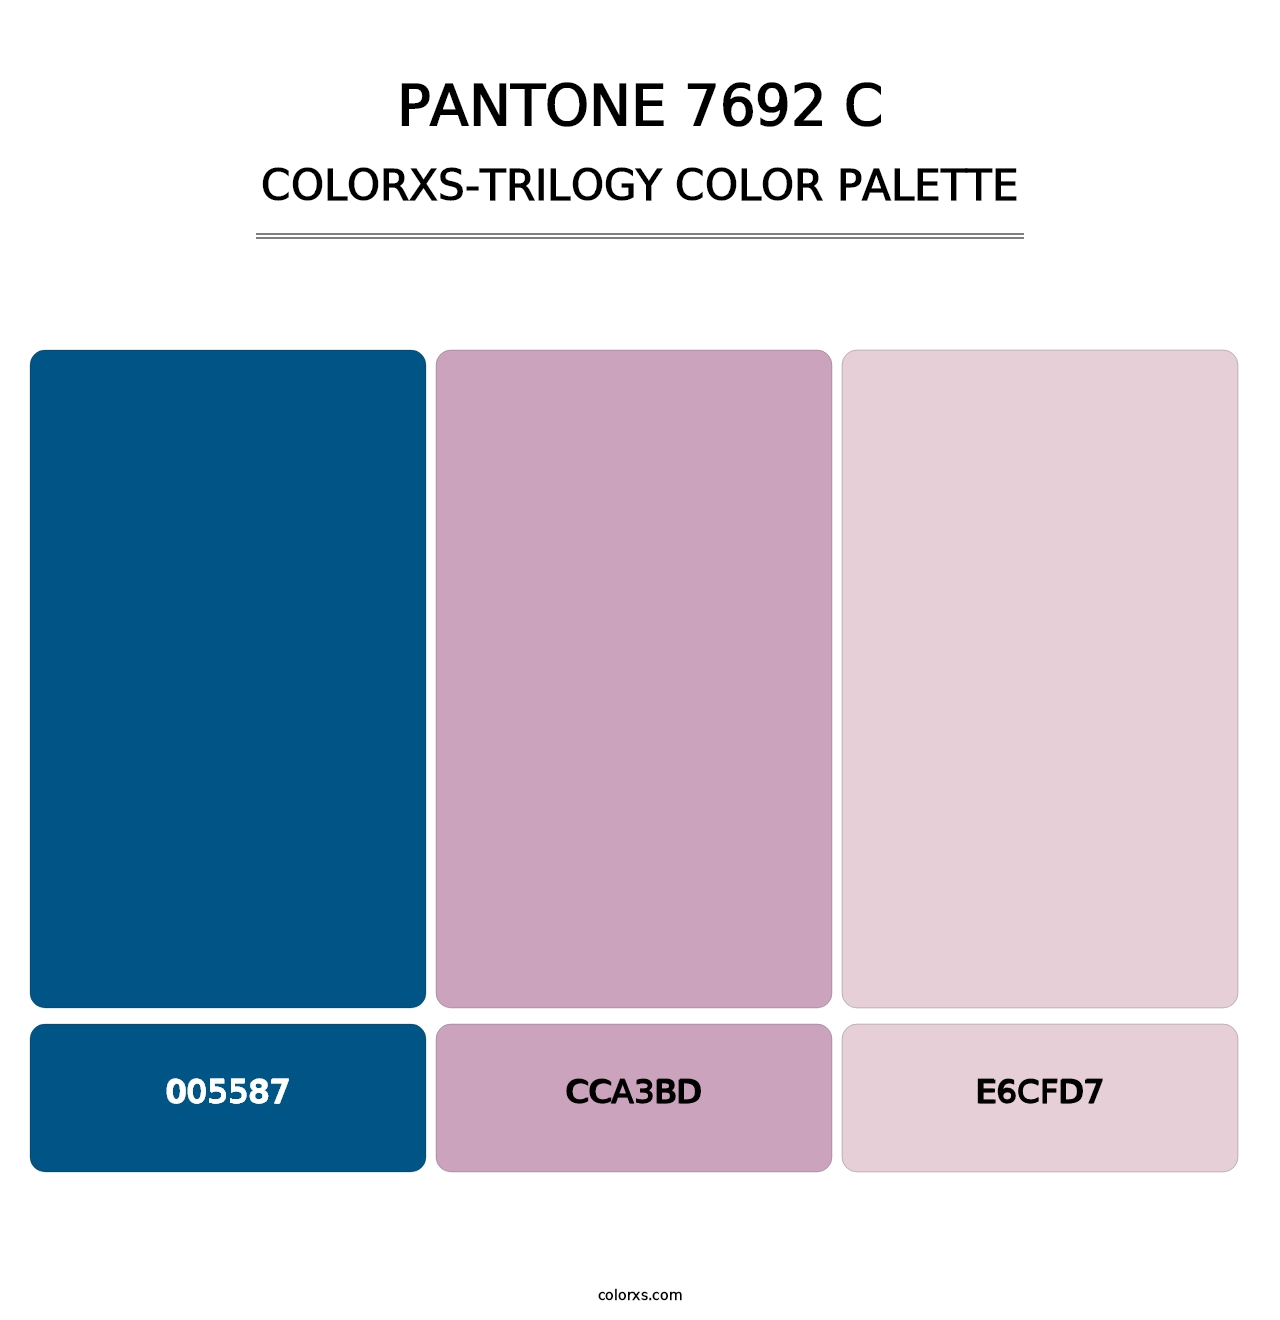 PANTONE 7692 C - Colorxs Trilogy Palette